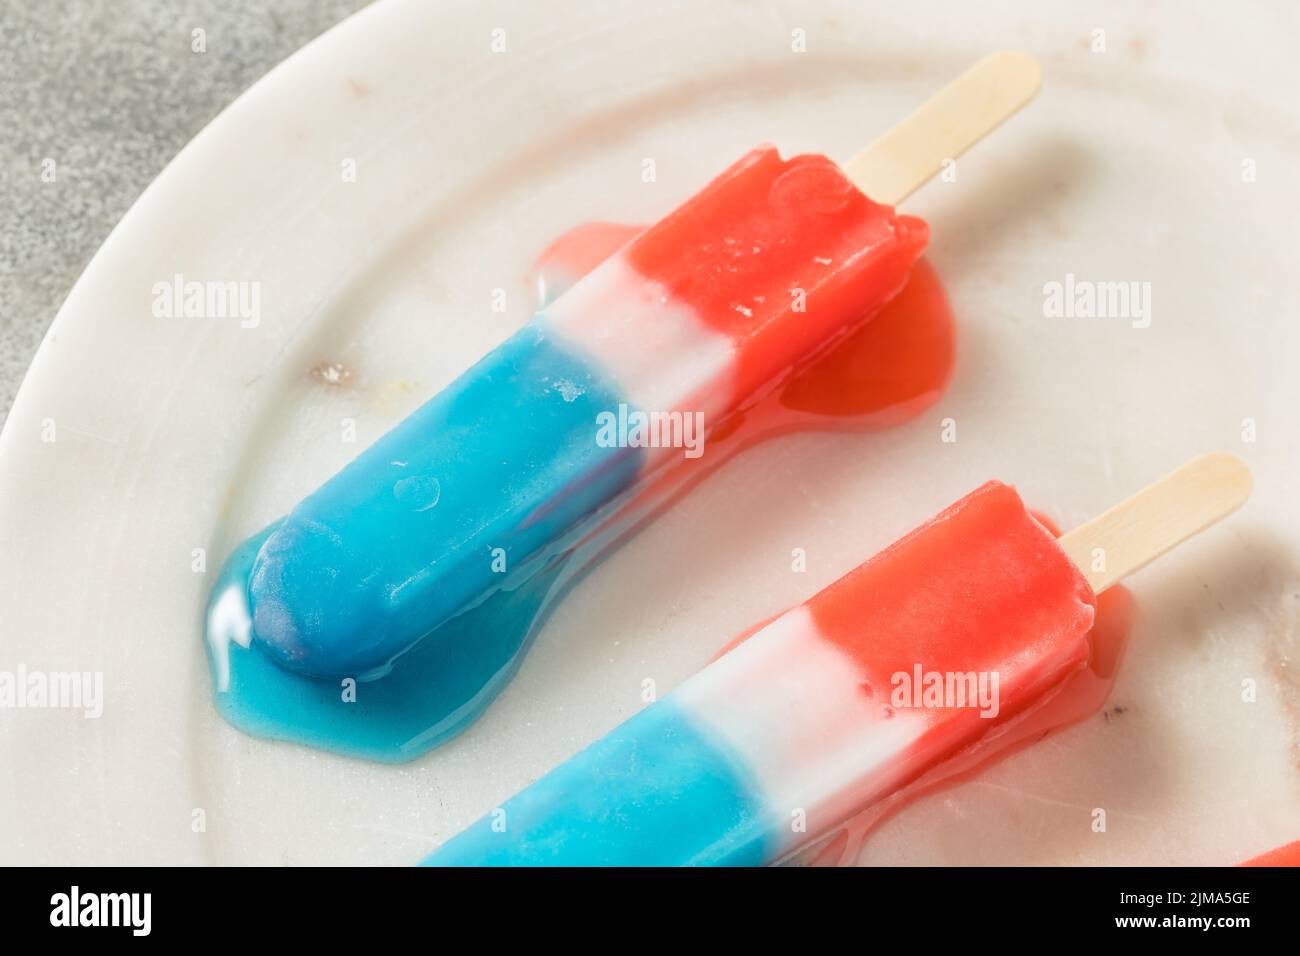 Paleta casera roja blanca azul lista para comer para el verano Foto de stock